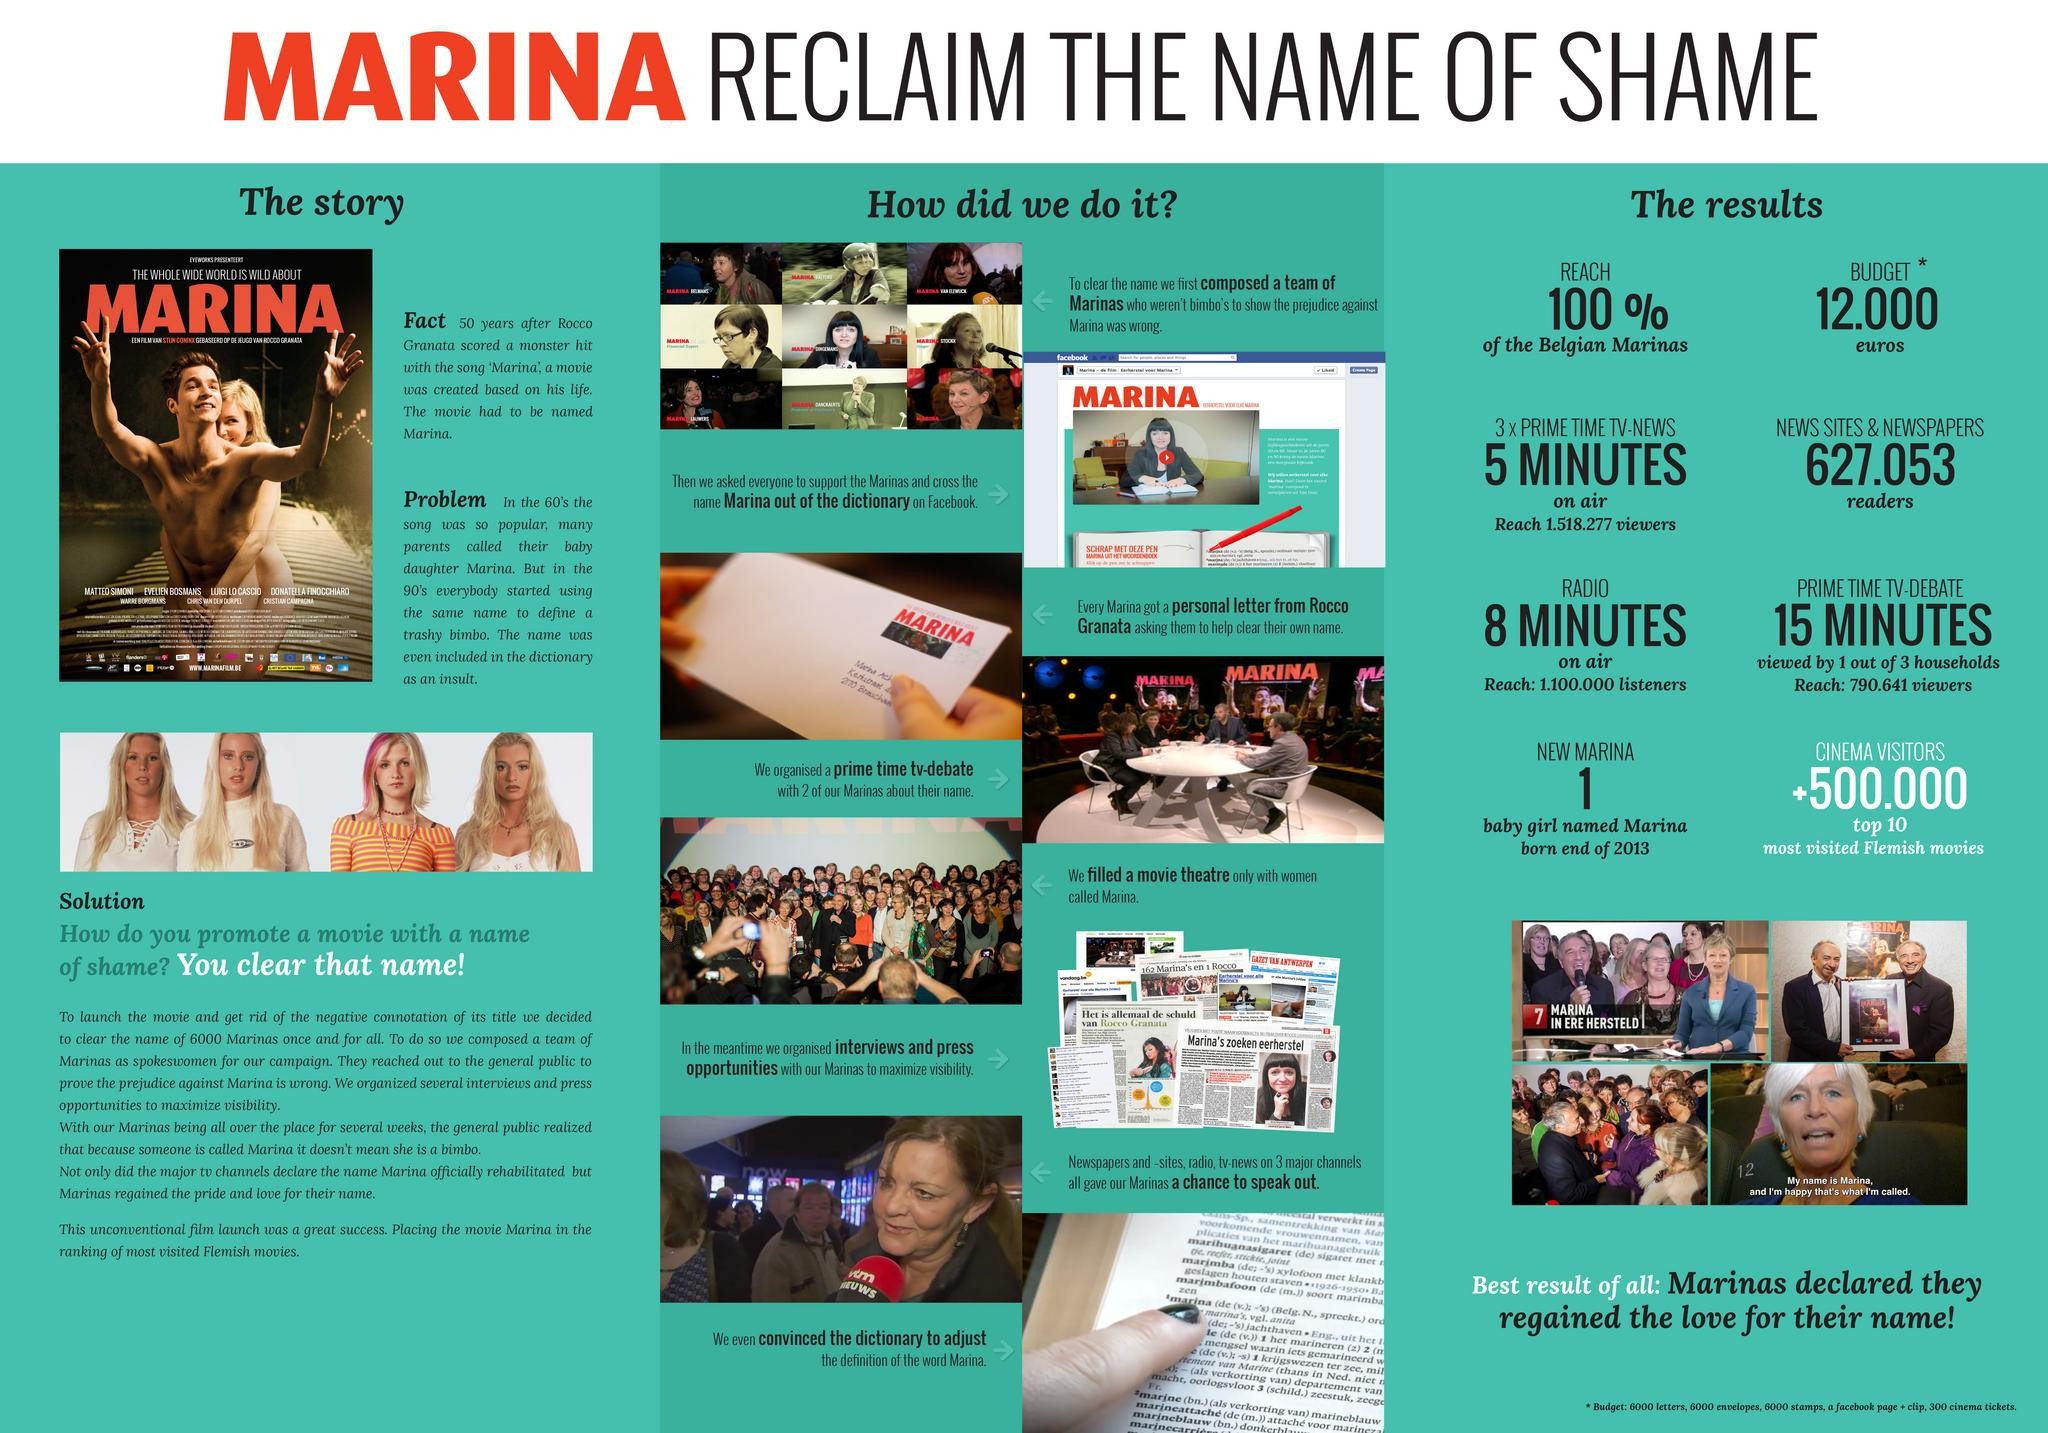 MARINA, RECLAIM THE NAME OF SHAME